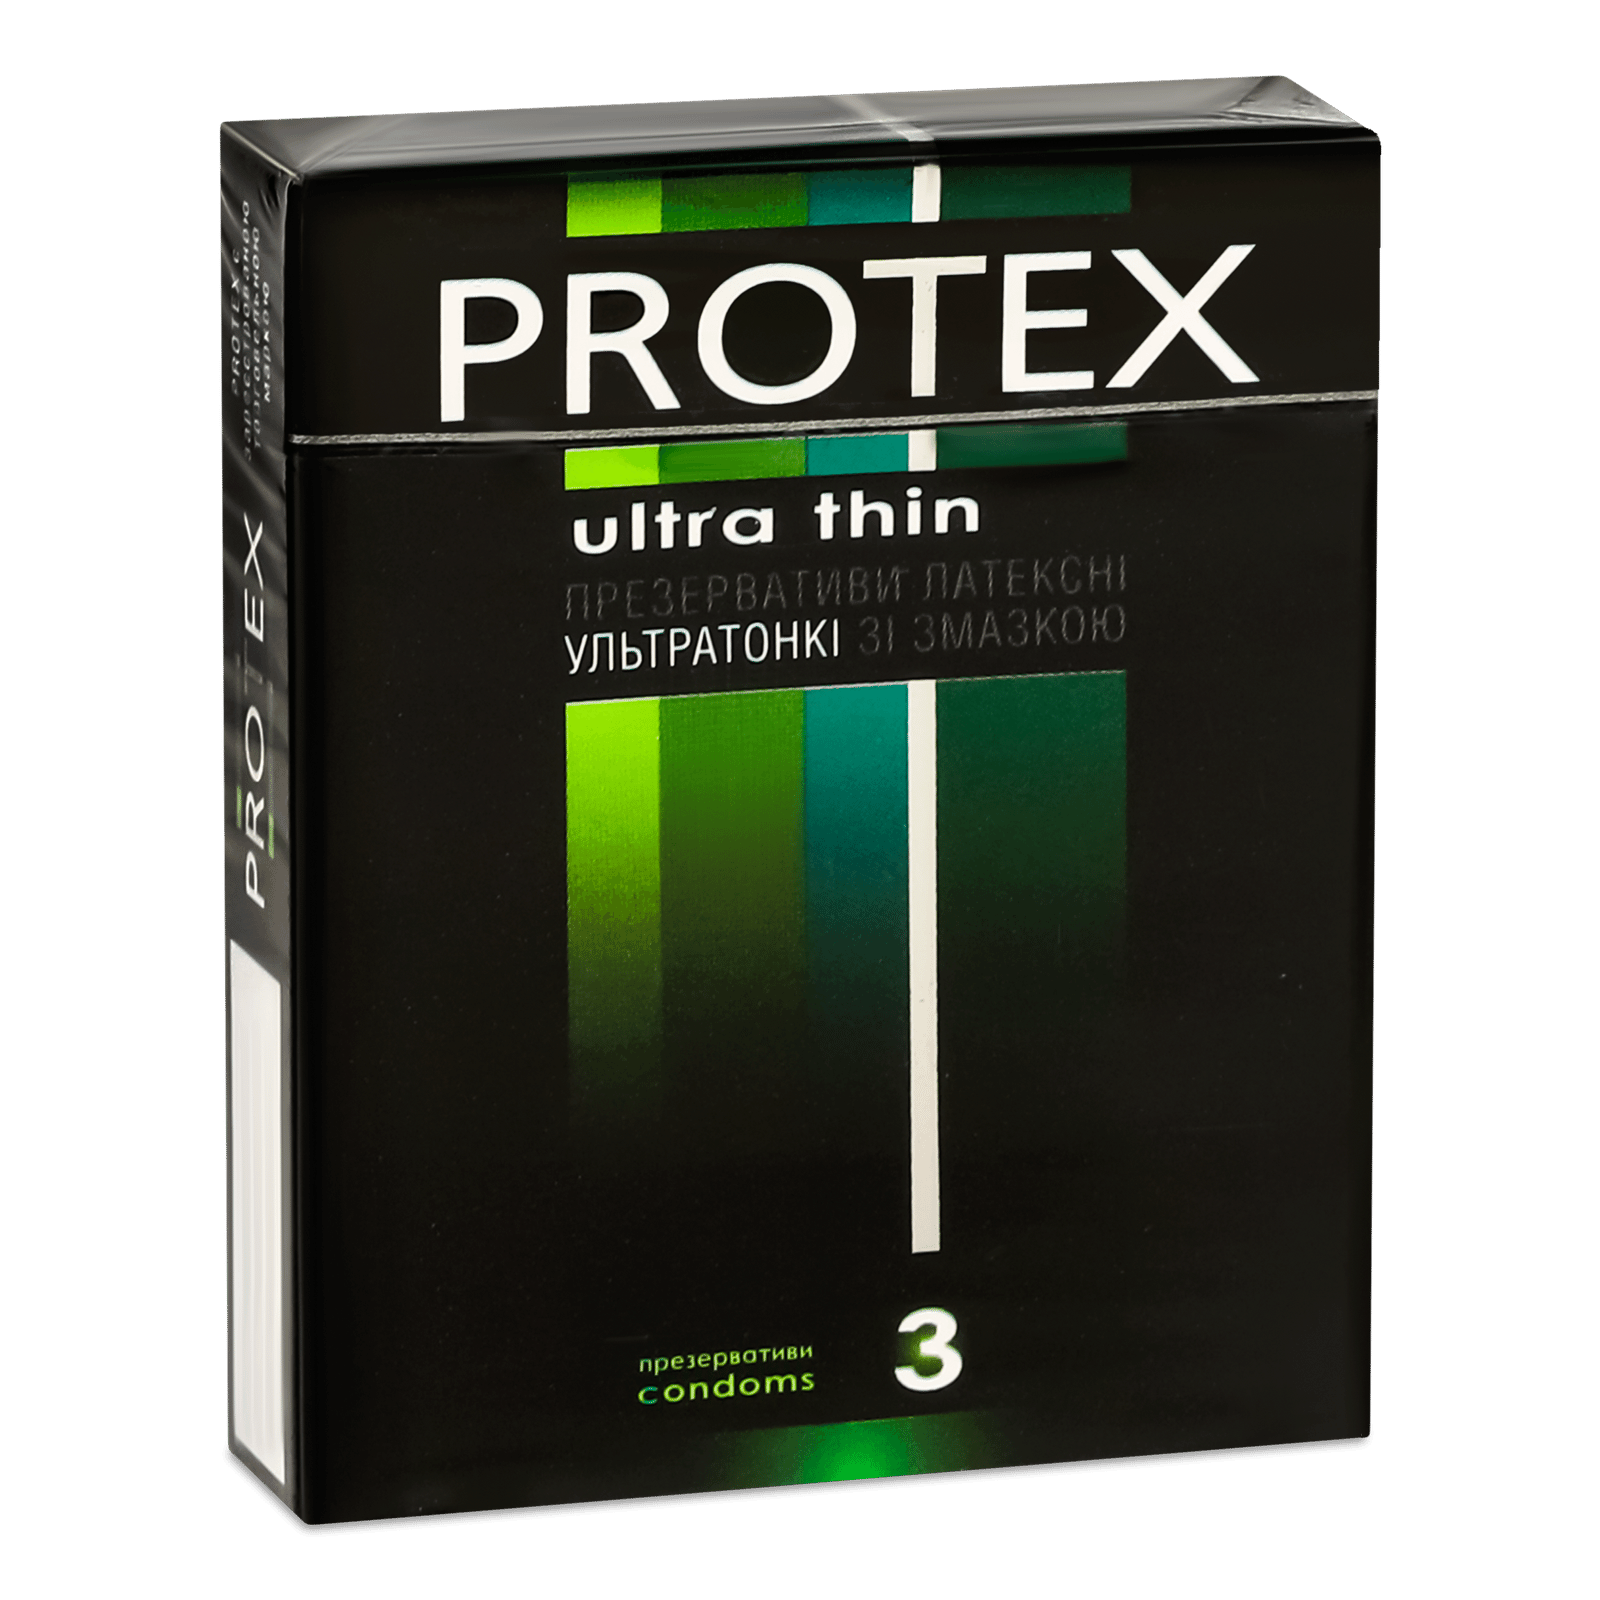 Презервативи Protex ультратонкі зі змазкою - 1